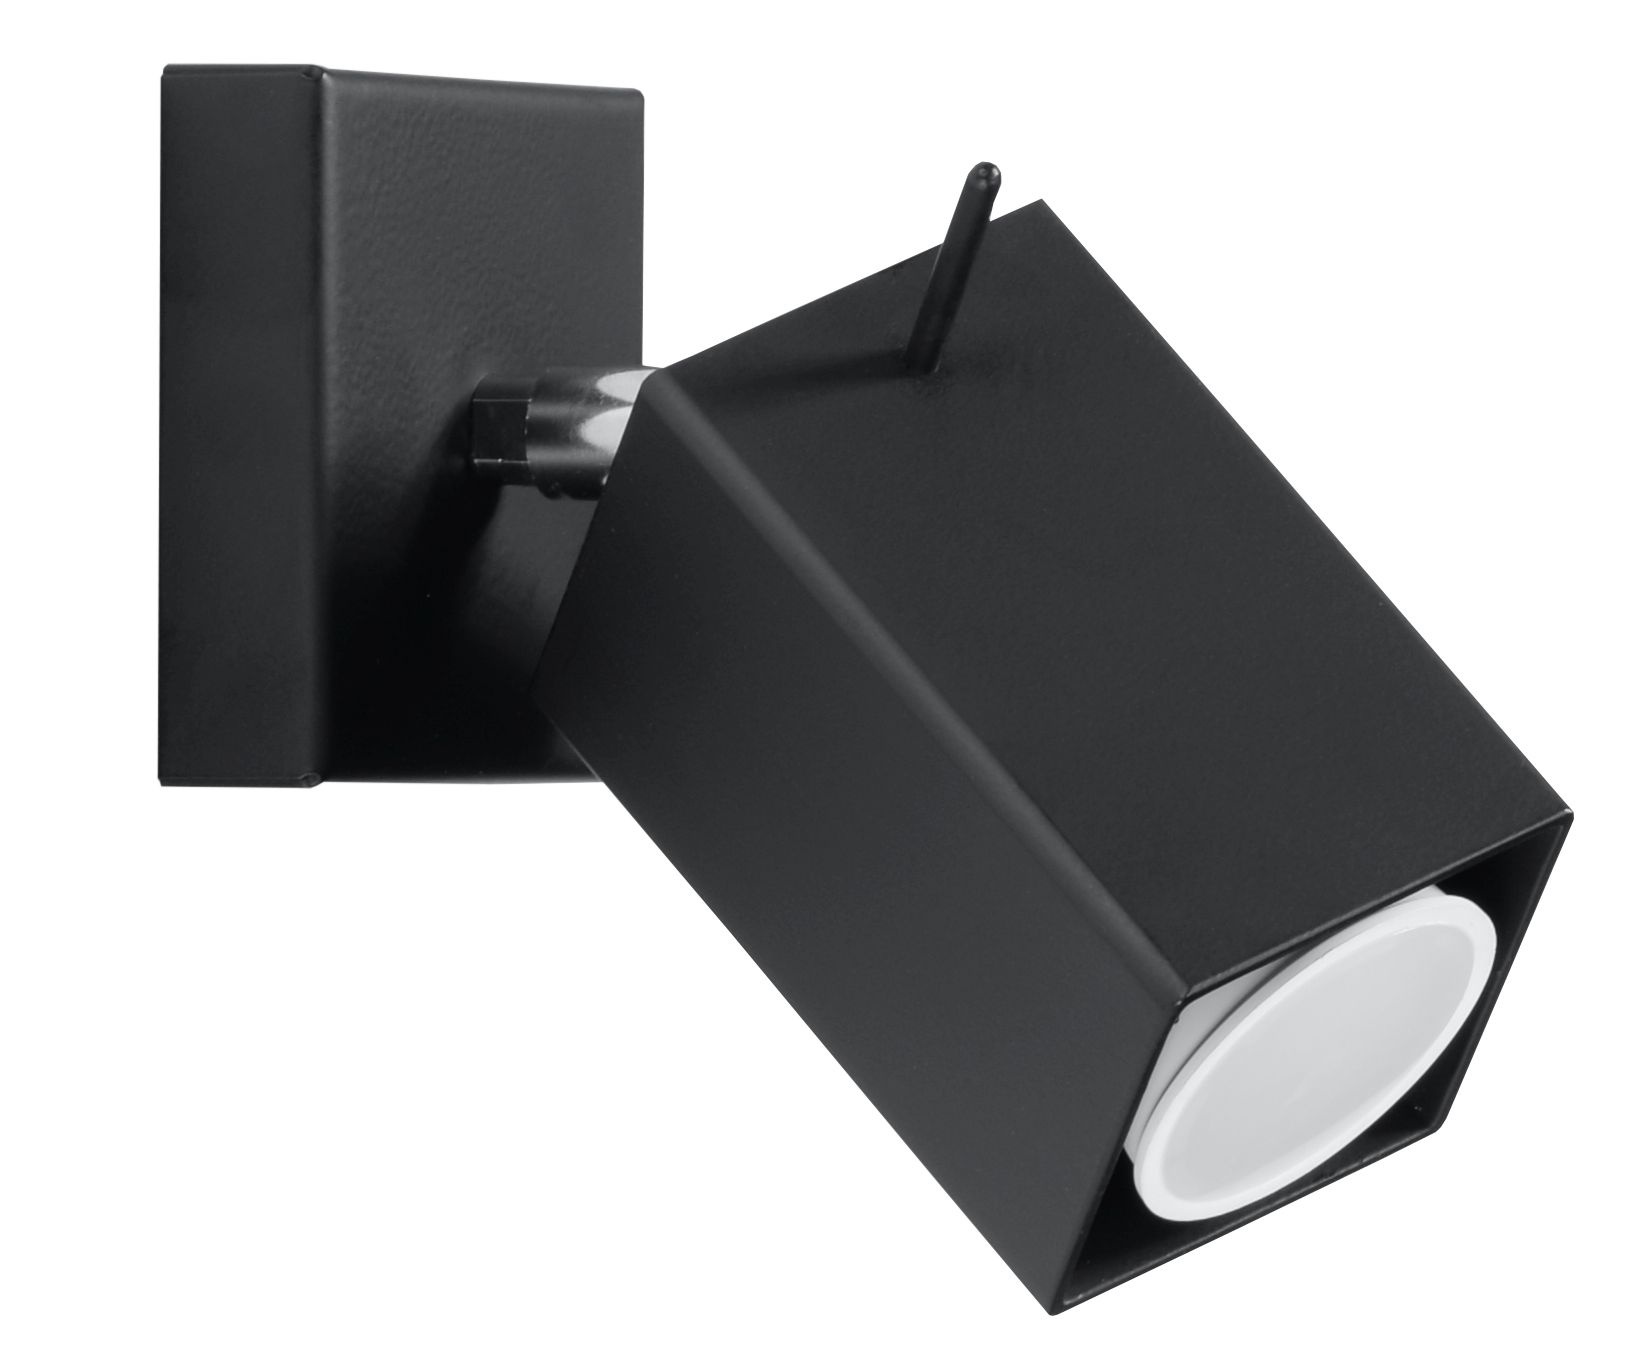 LED Wandstrahler Spot MERIDA verstellbar schwarz inkl. LED warmweiß 7W  schwarz | LichtED.de - LED Lampen und Beleuchtung